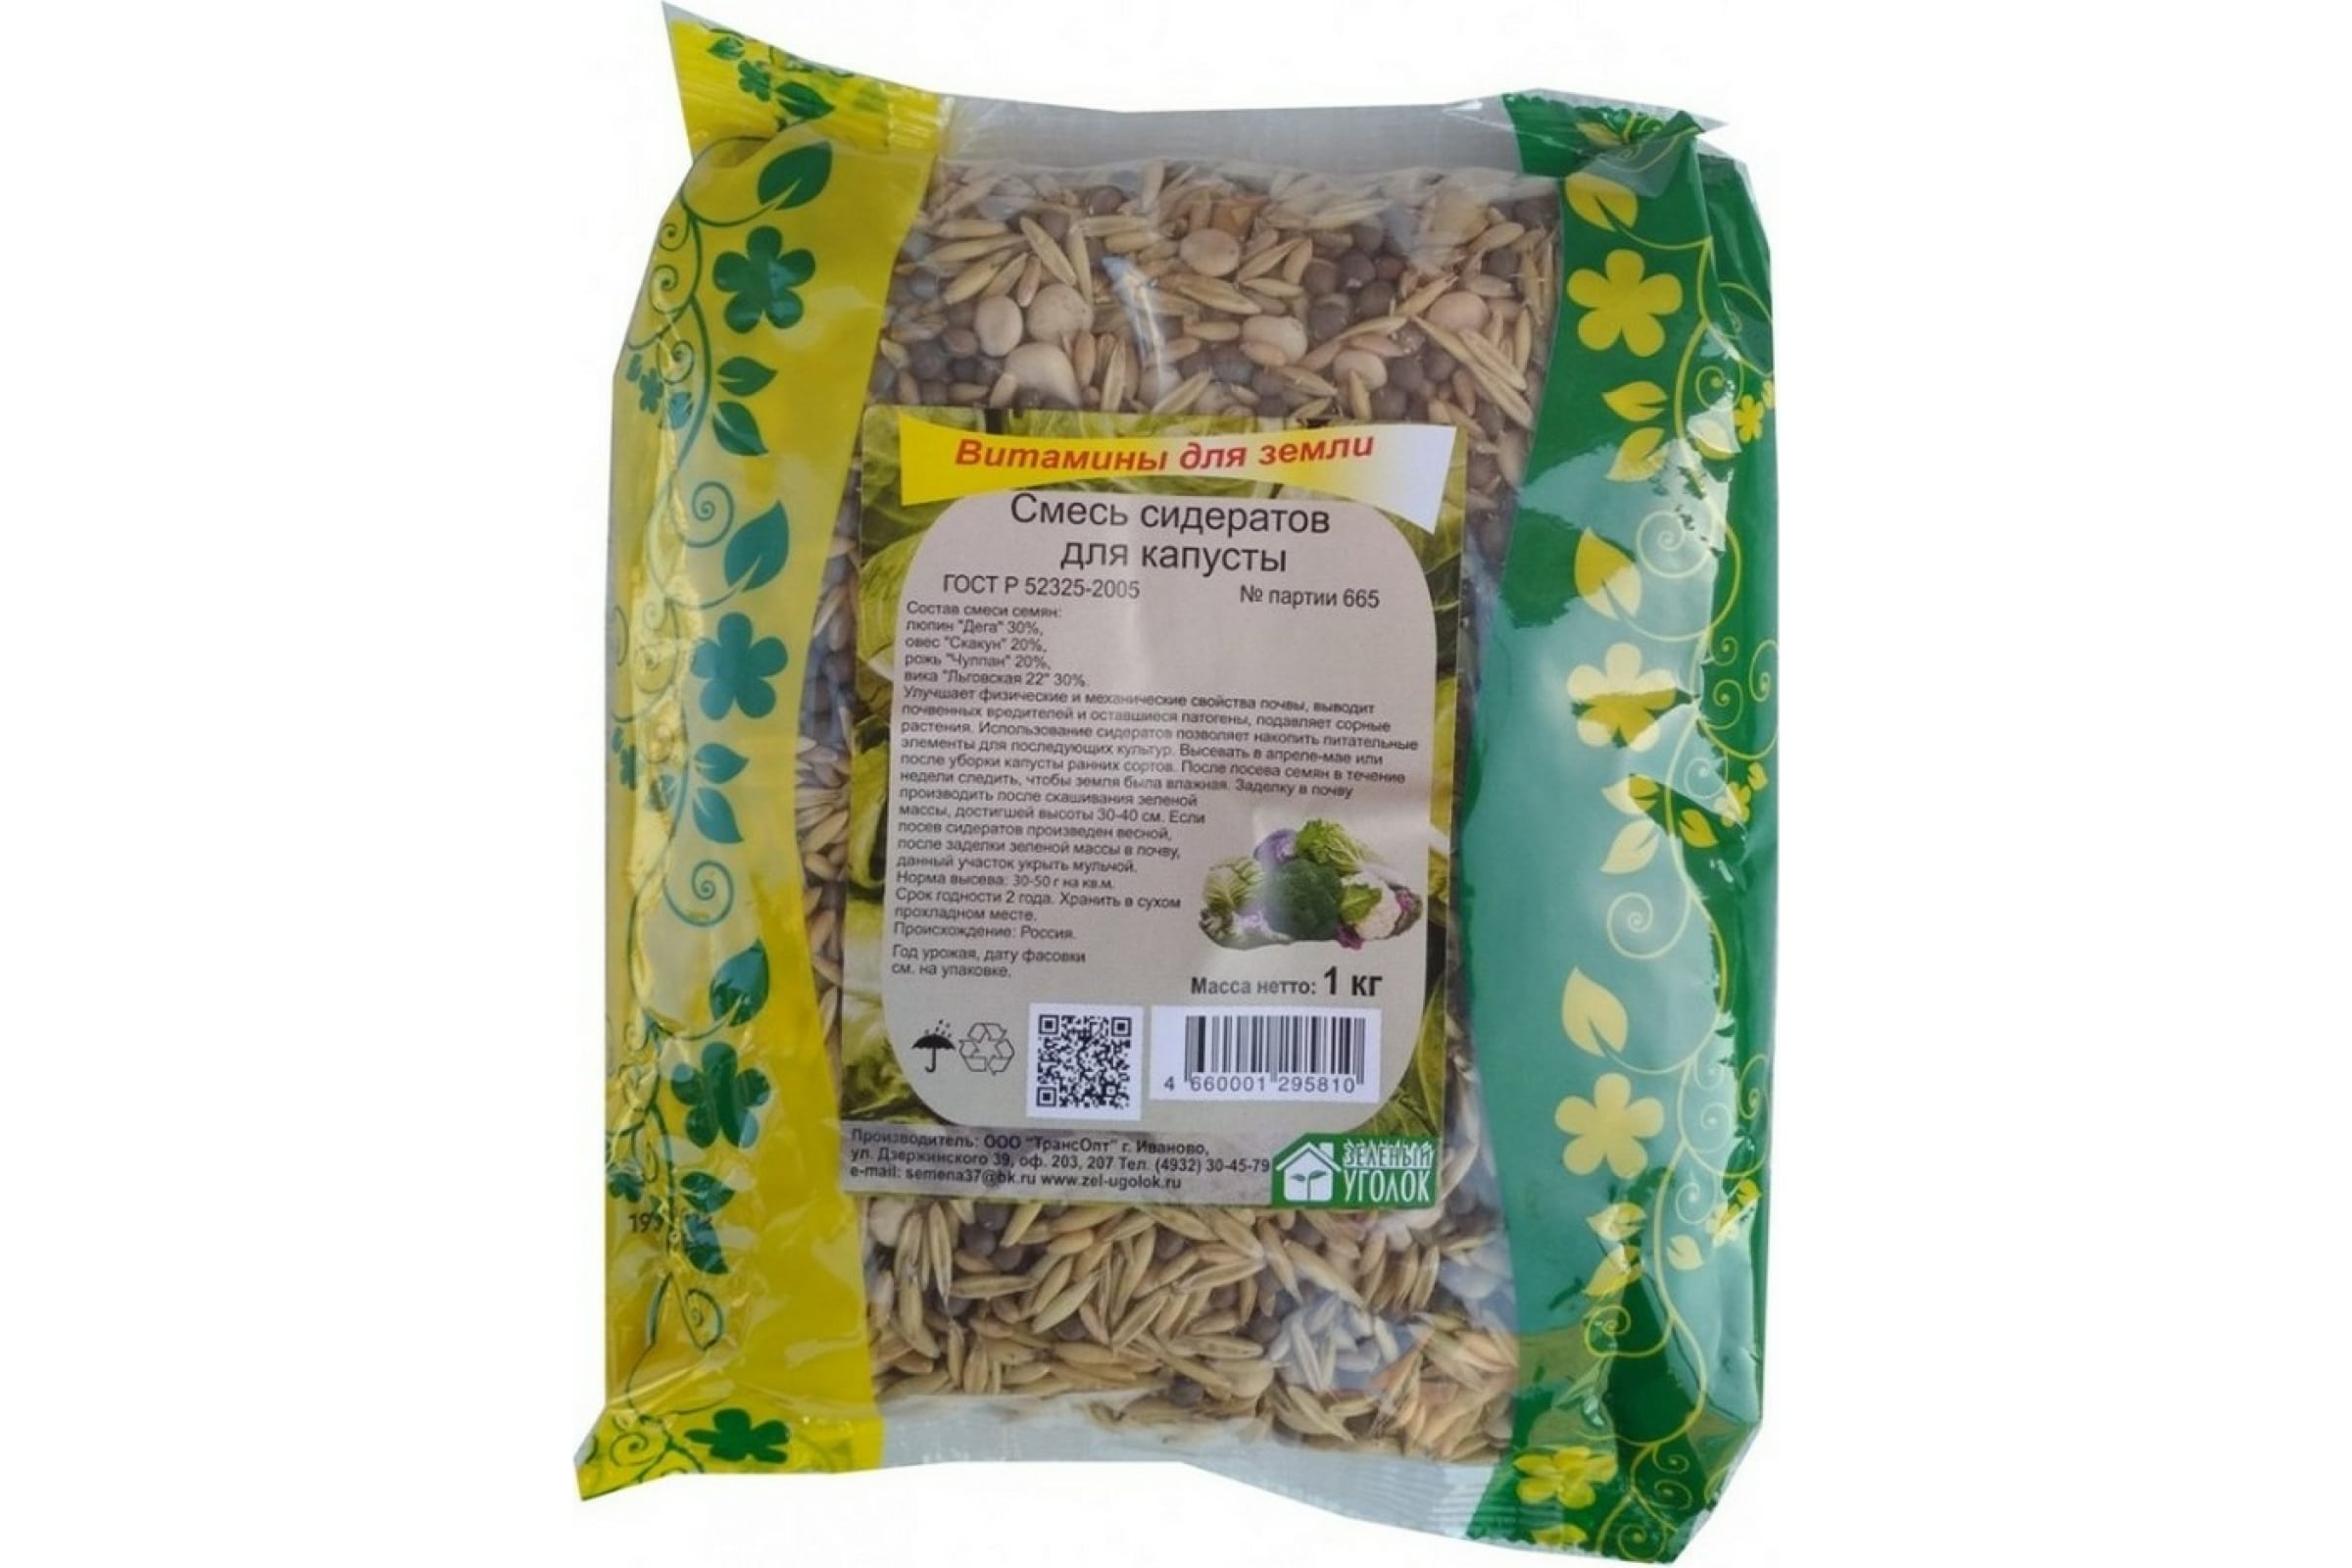 Зеленый Уголок Семена смесь сидератов для капусты, 1кг 4660001295810